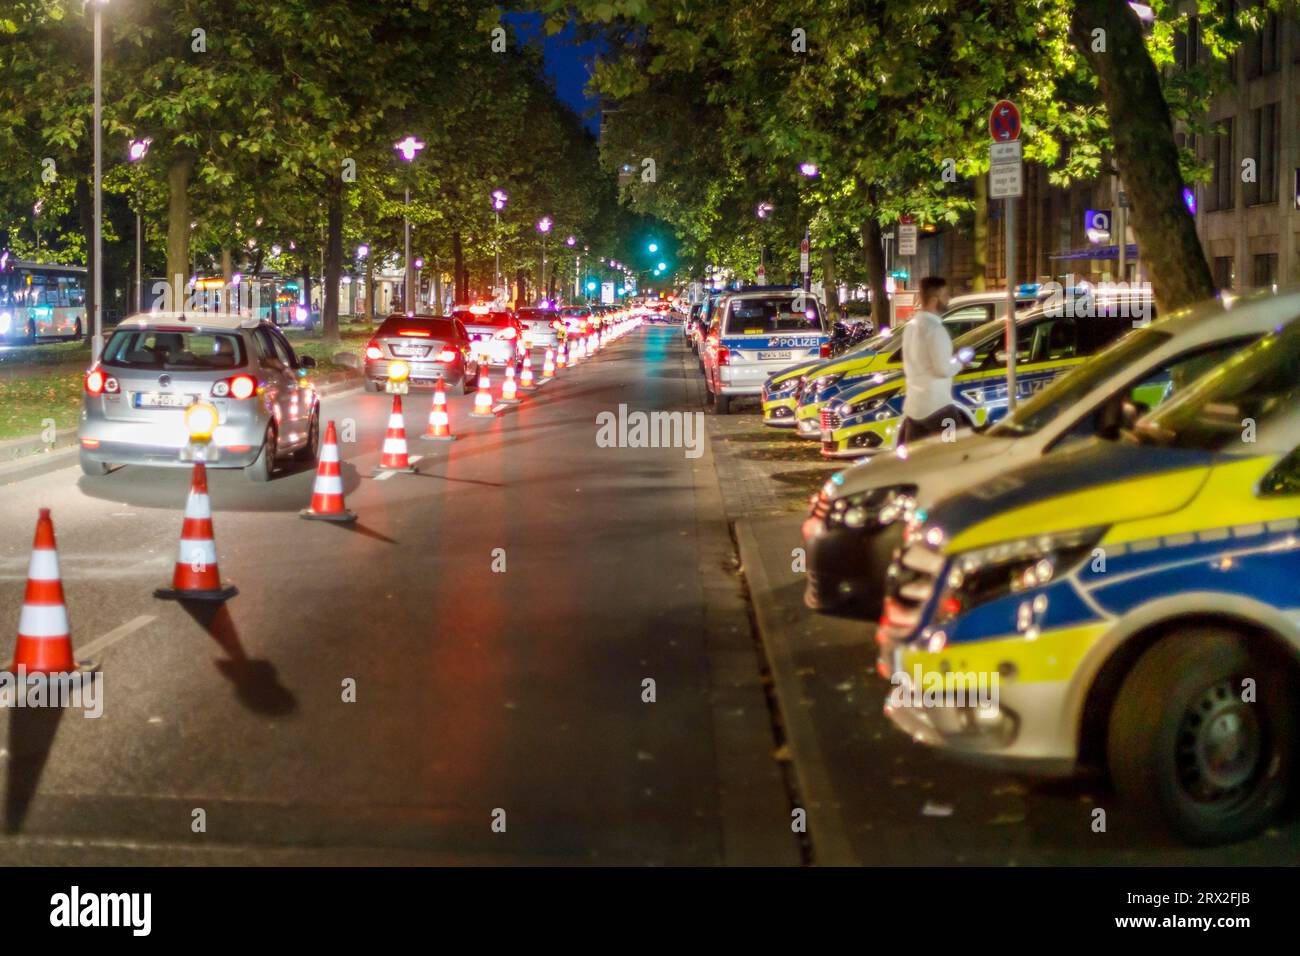 Sicherheitskonzept am Wochenende in der Düsseldorfer Altstadt, Absperrung für Einsatz- und Rettungsfahrzeuge Foto Stock